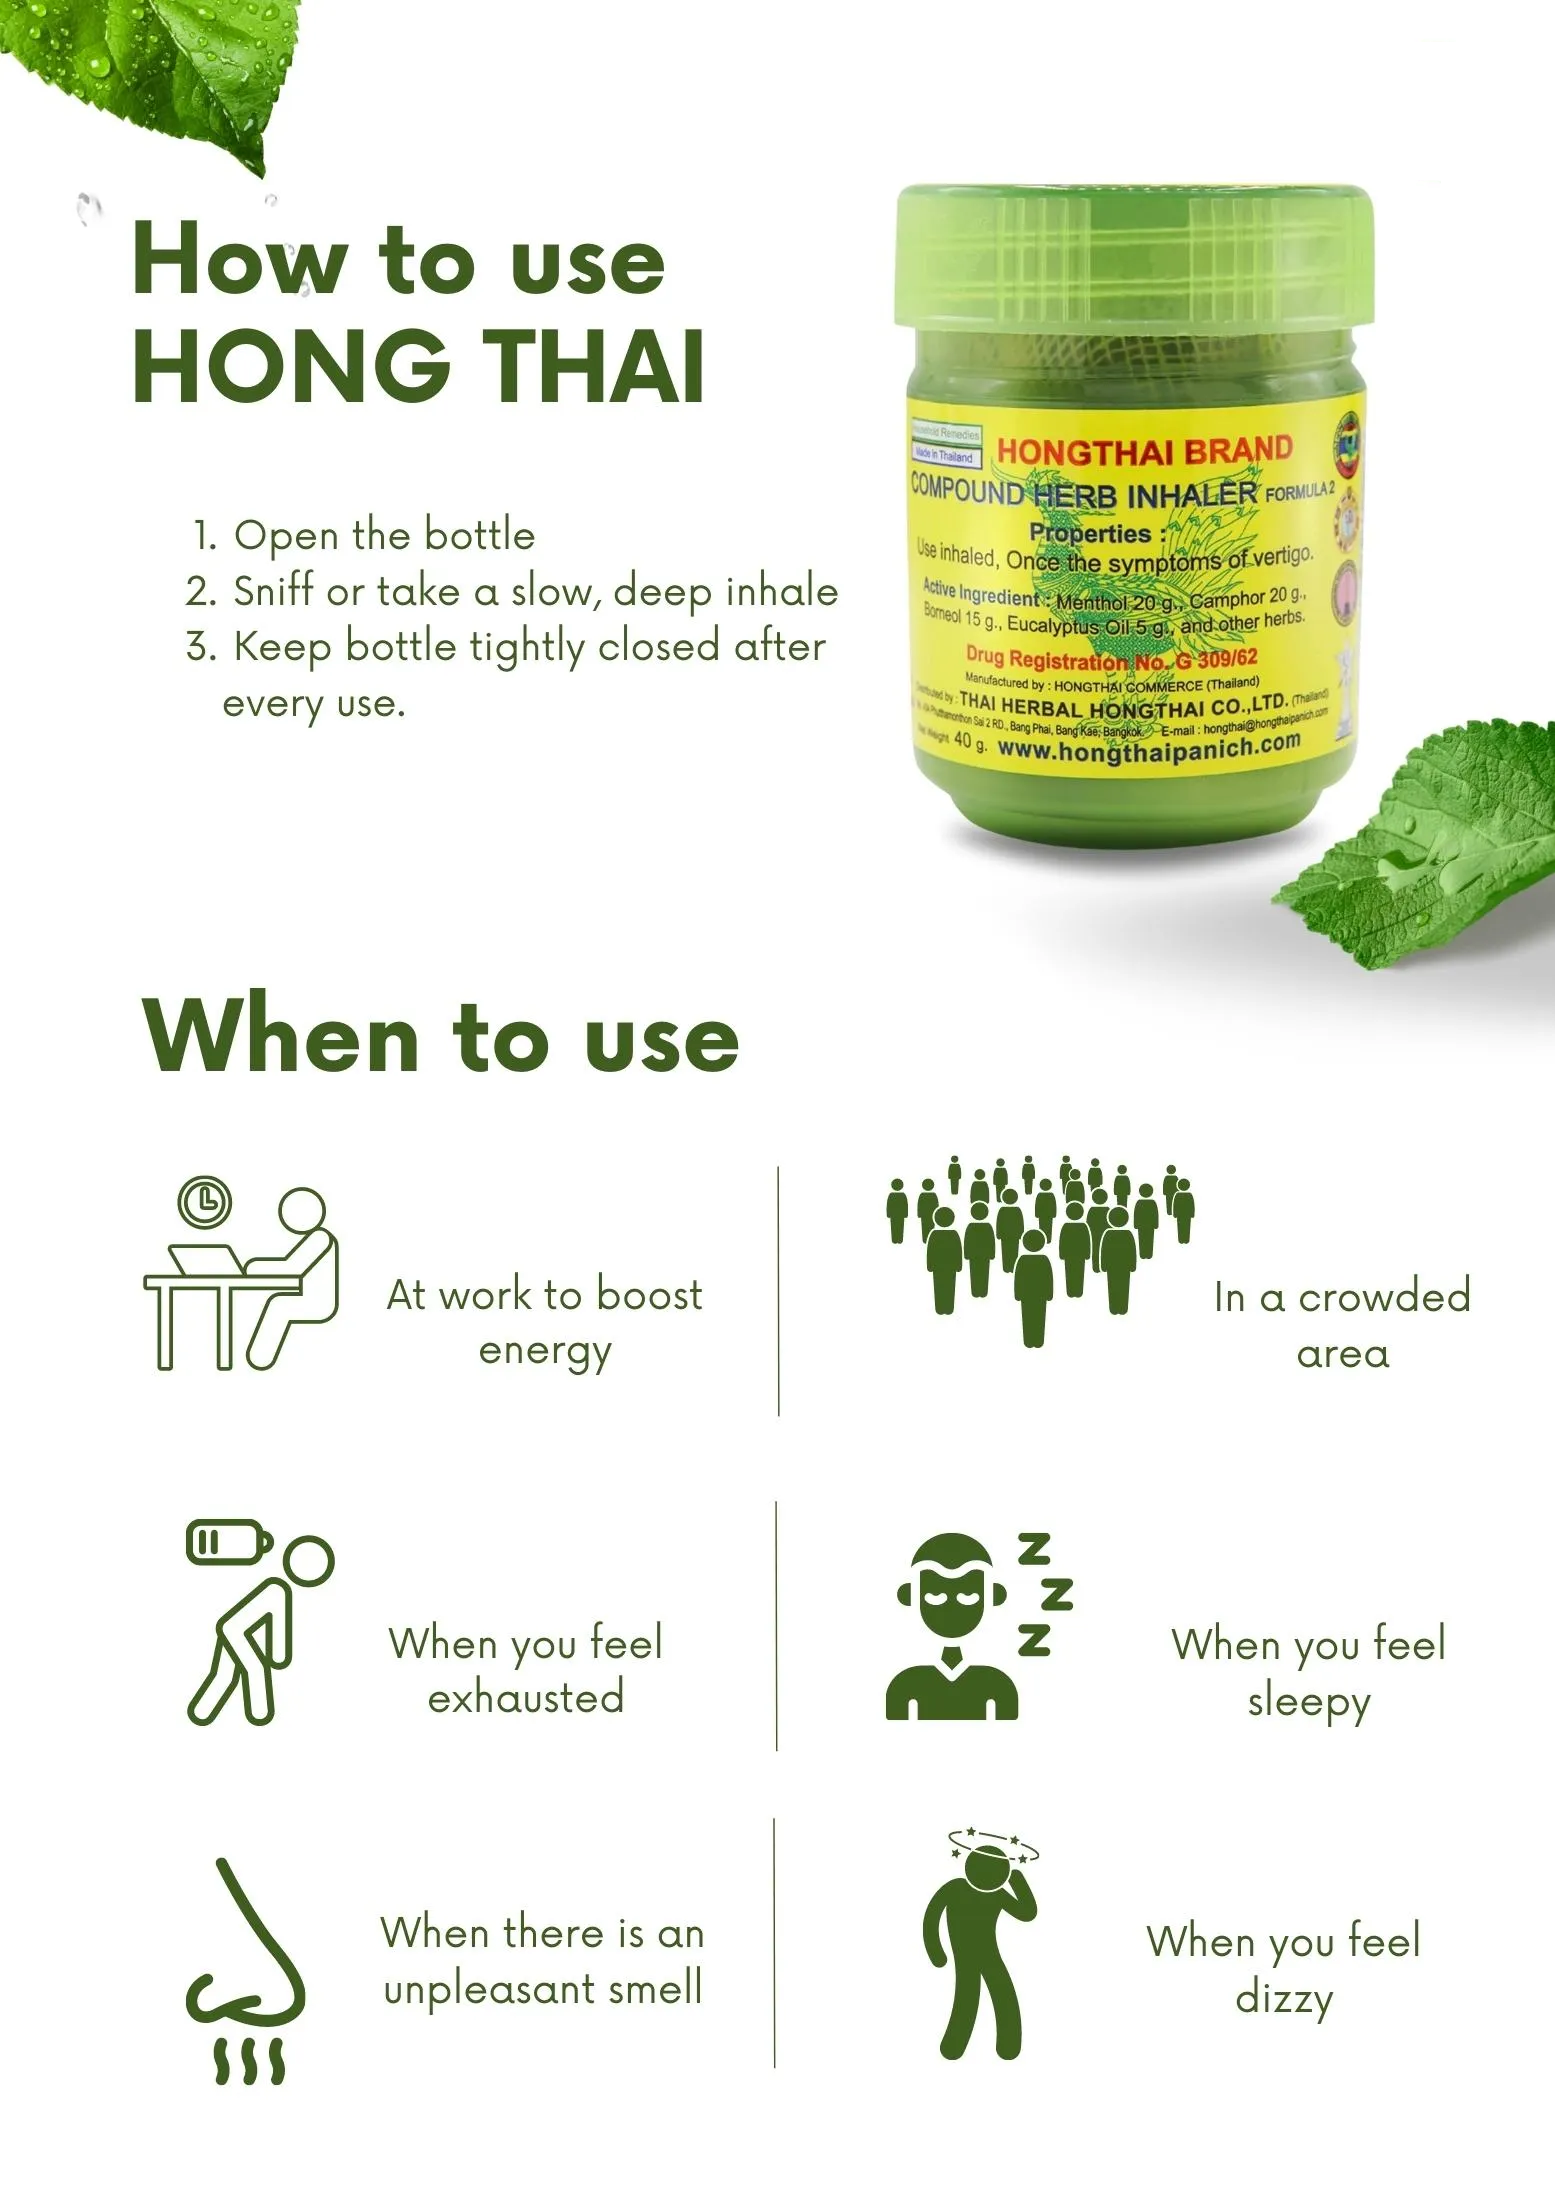 Hong Thai Compound Herb Inhaler